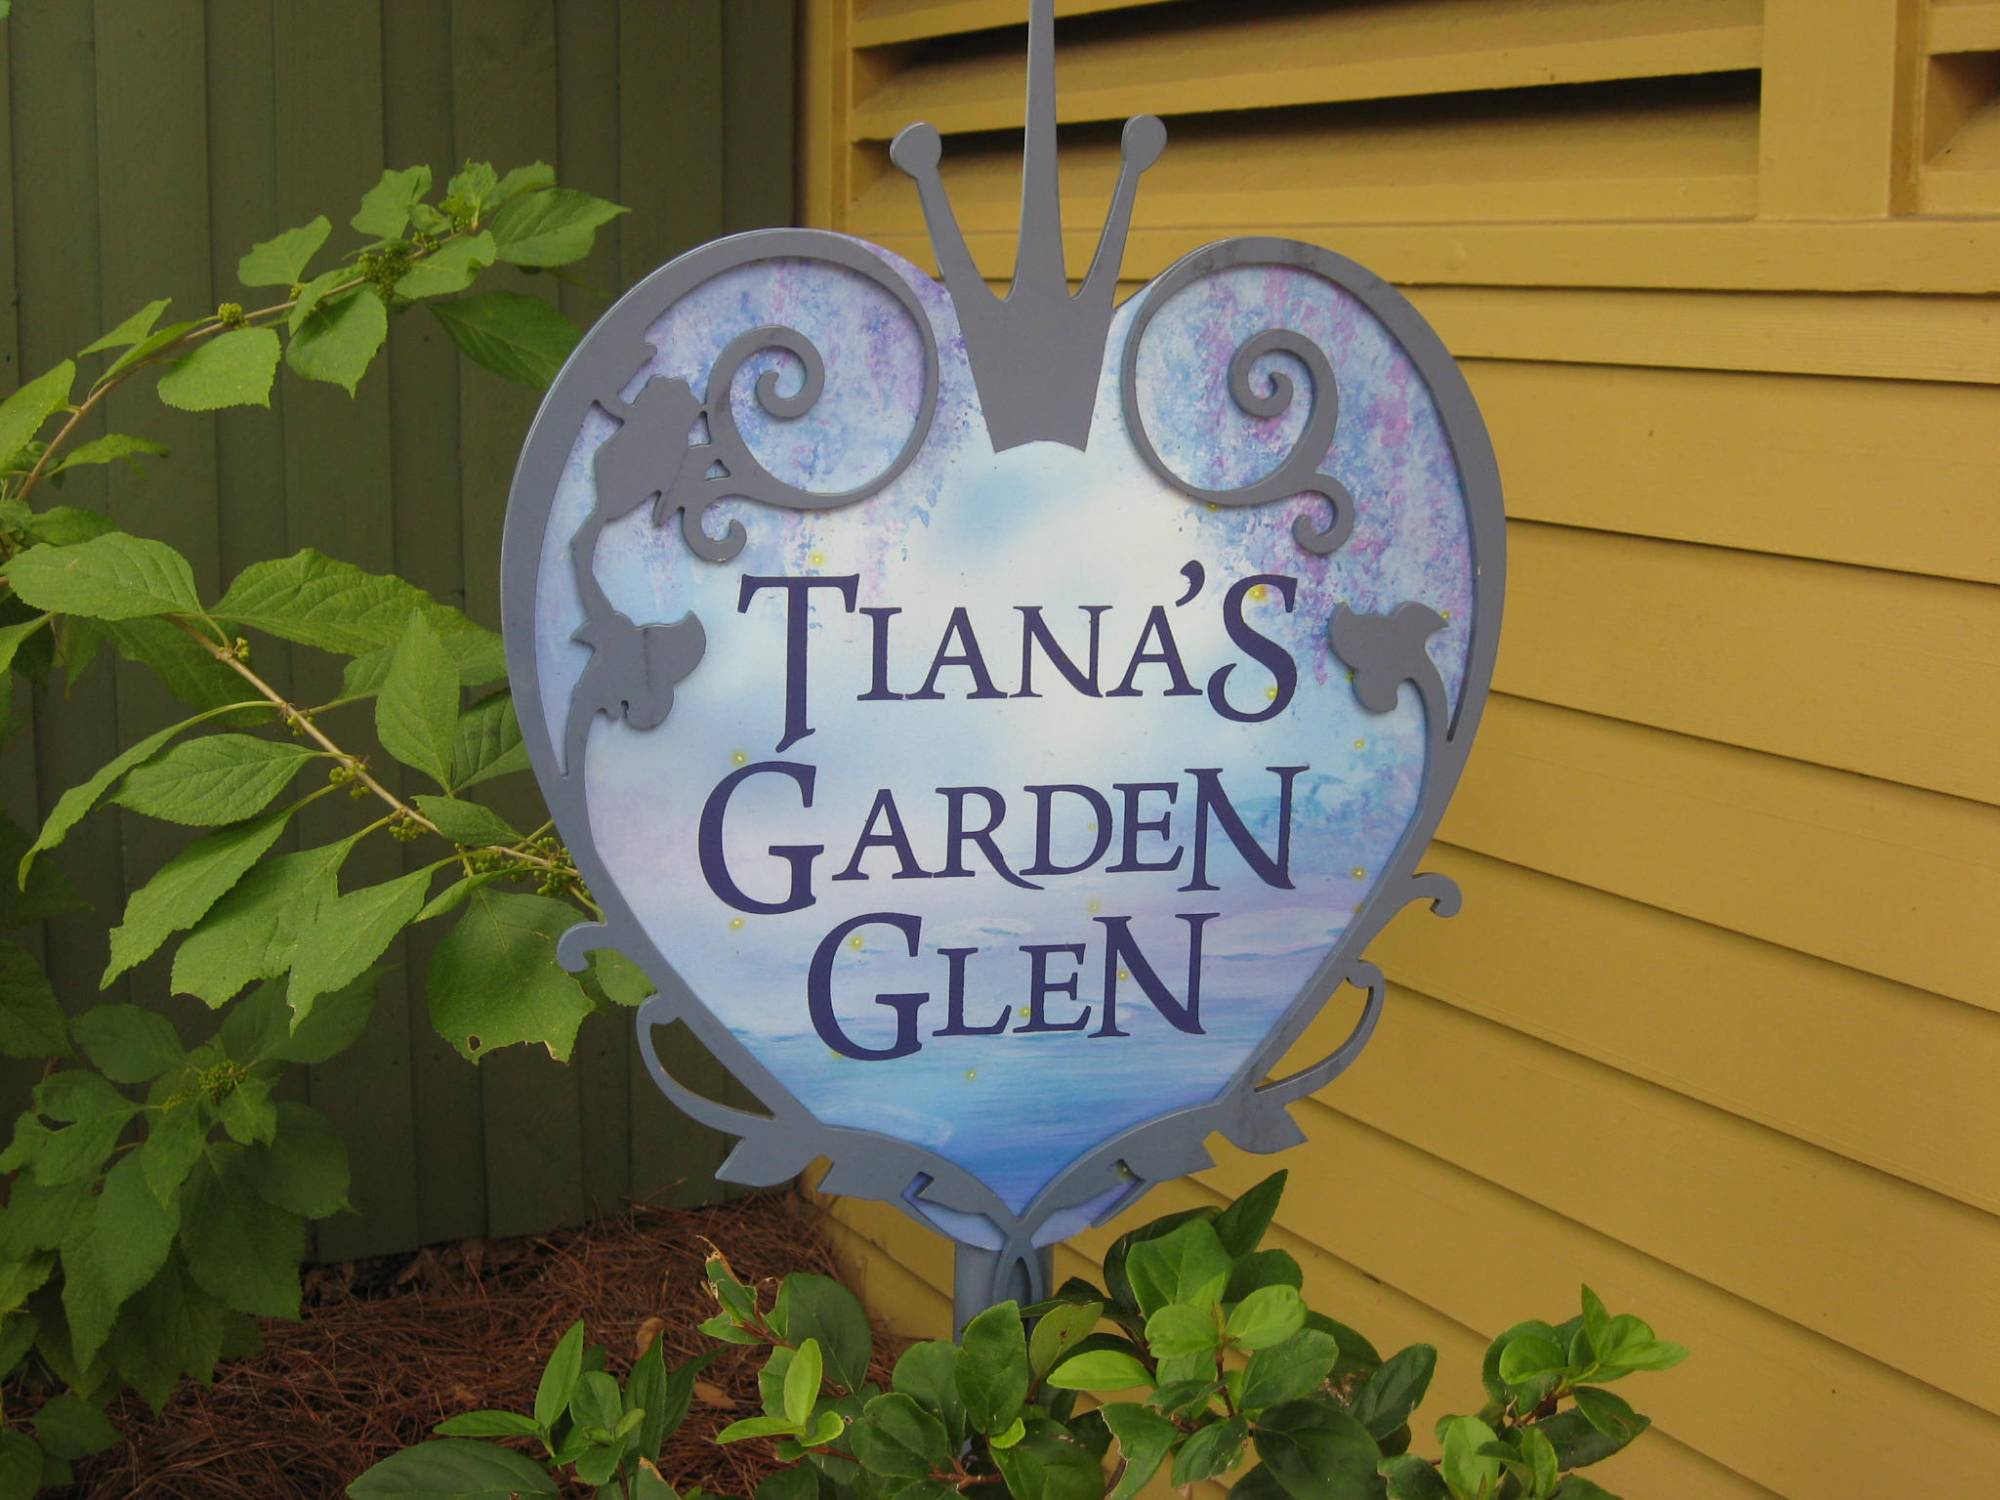 Liberty Square - Tiana's Garden Glen sign